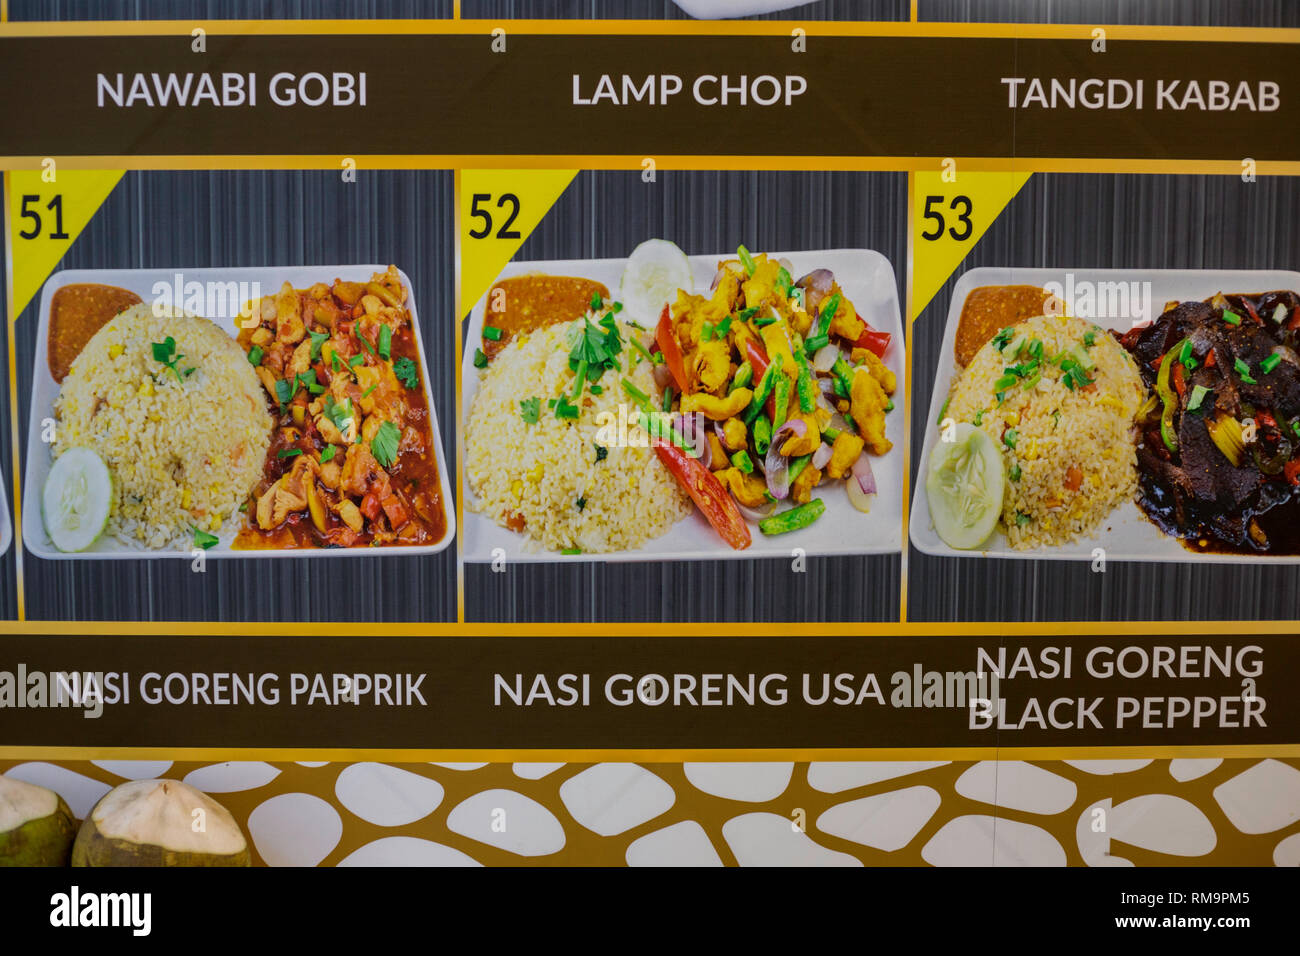 El menú del restaurante ofrece Nasi Goreng USA, fritos arroz menos picante de lo habitual. Singapur. Foto de stock